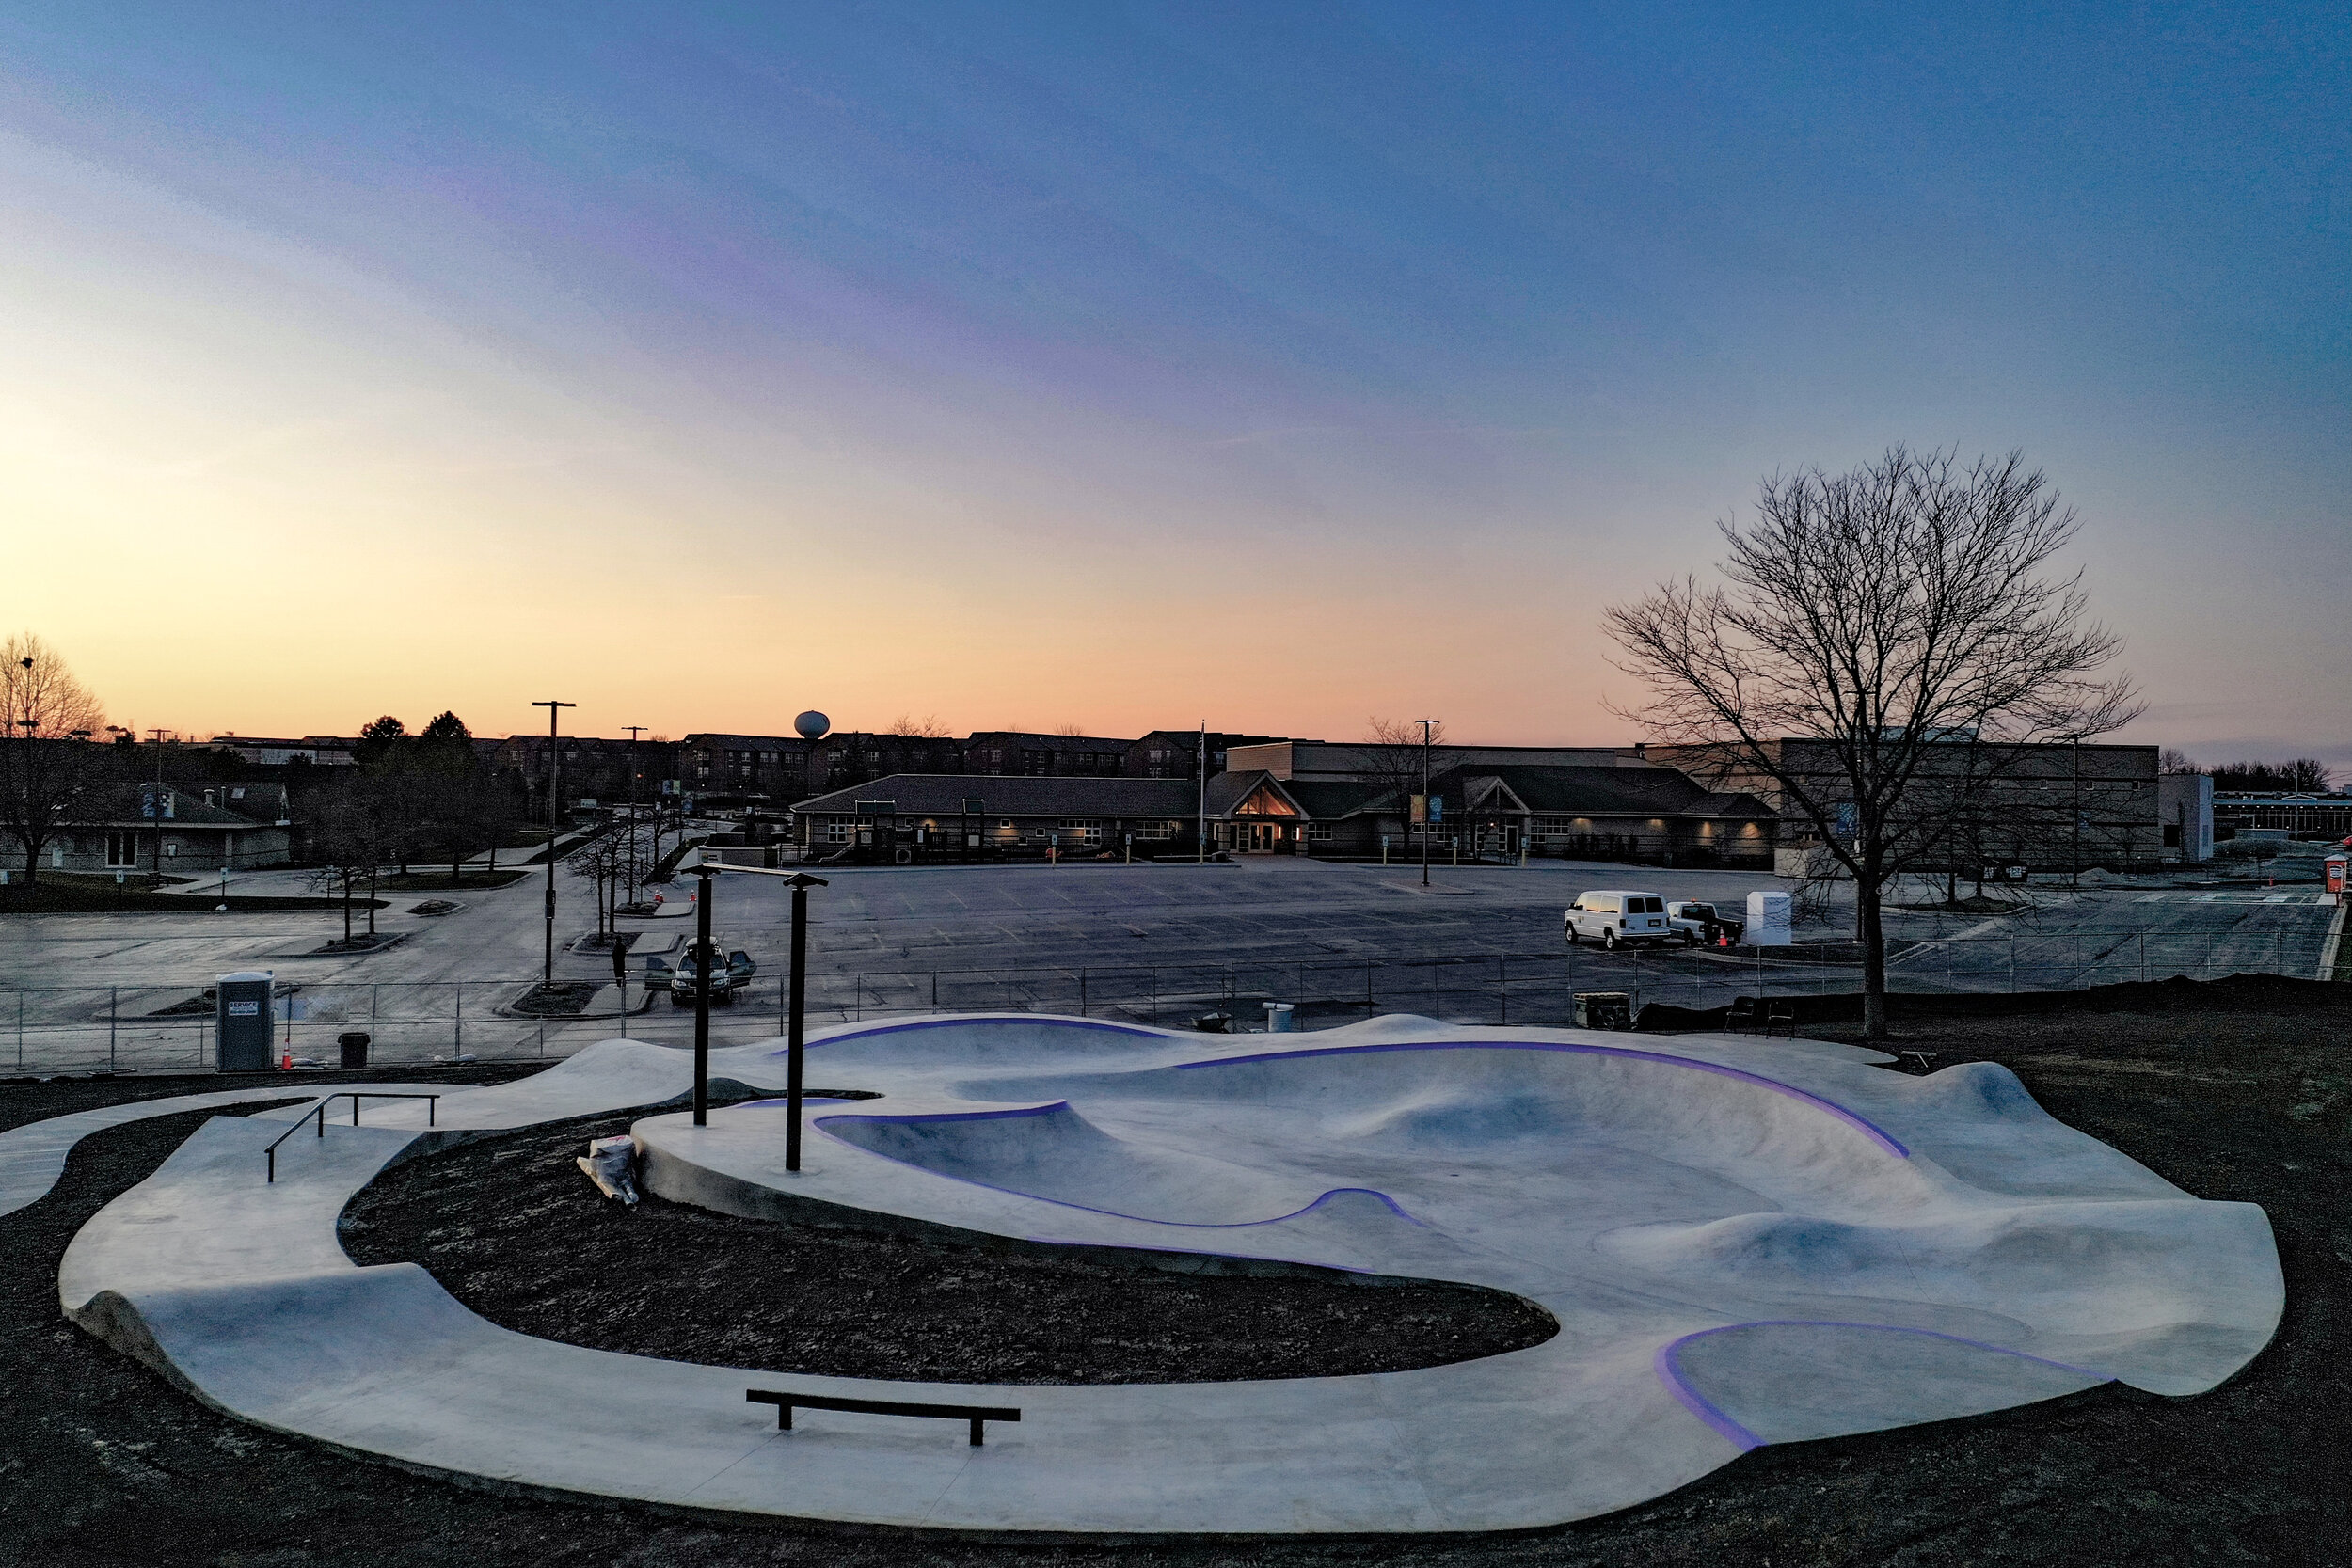 Picture book skate spot ✨ Vernon Hills, Illinois